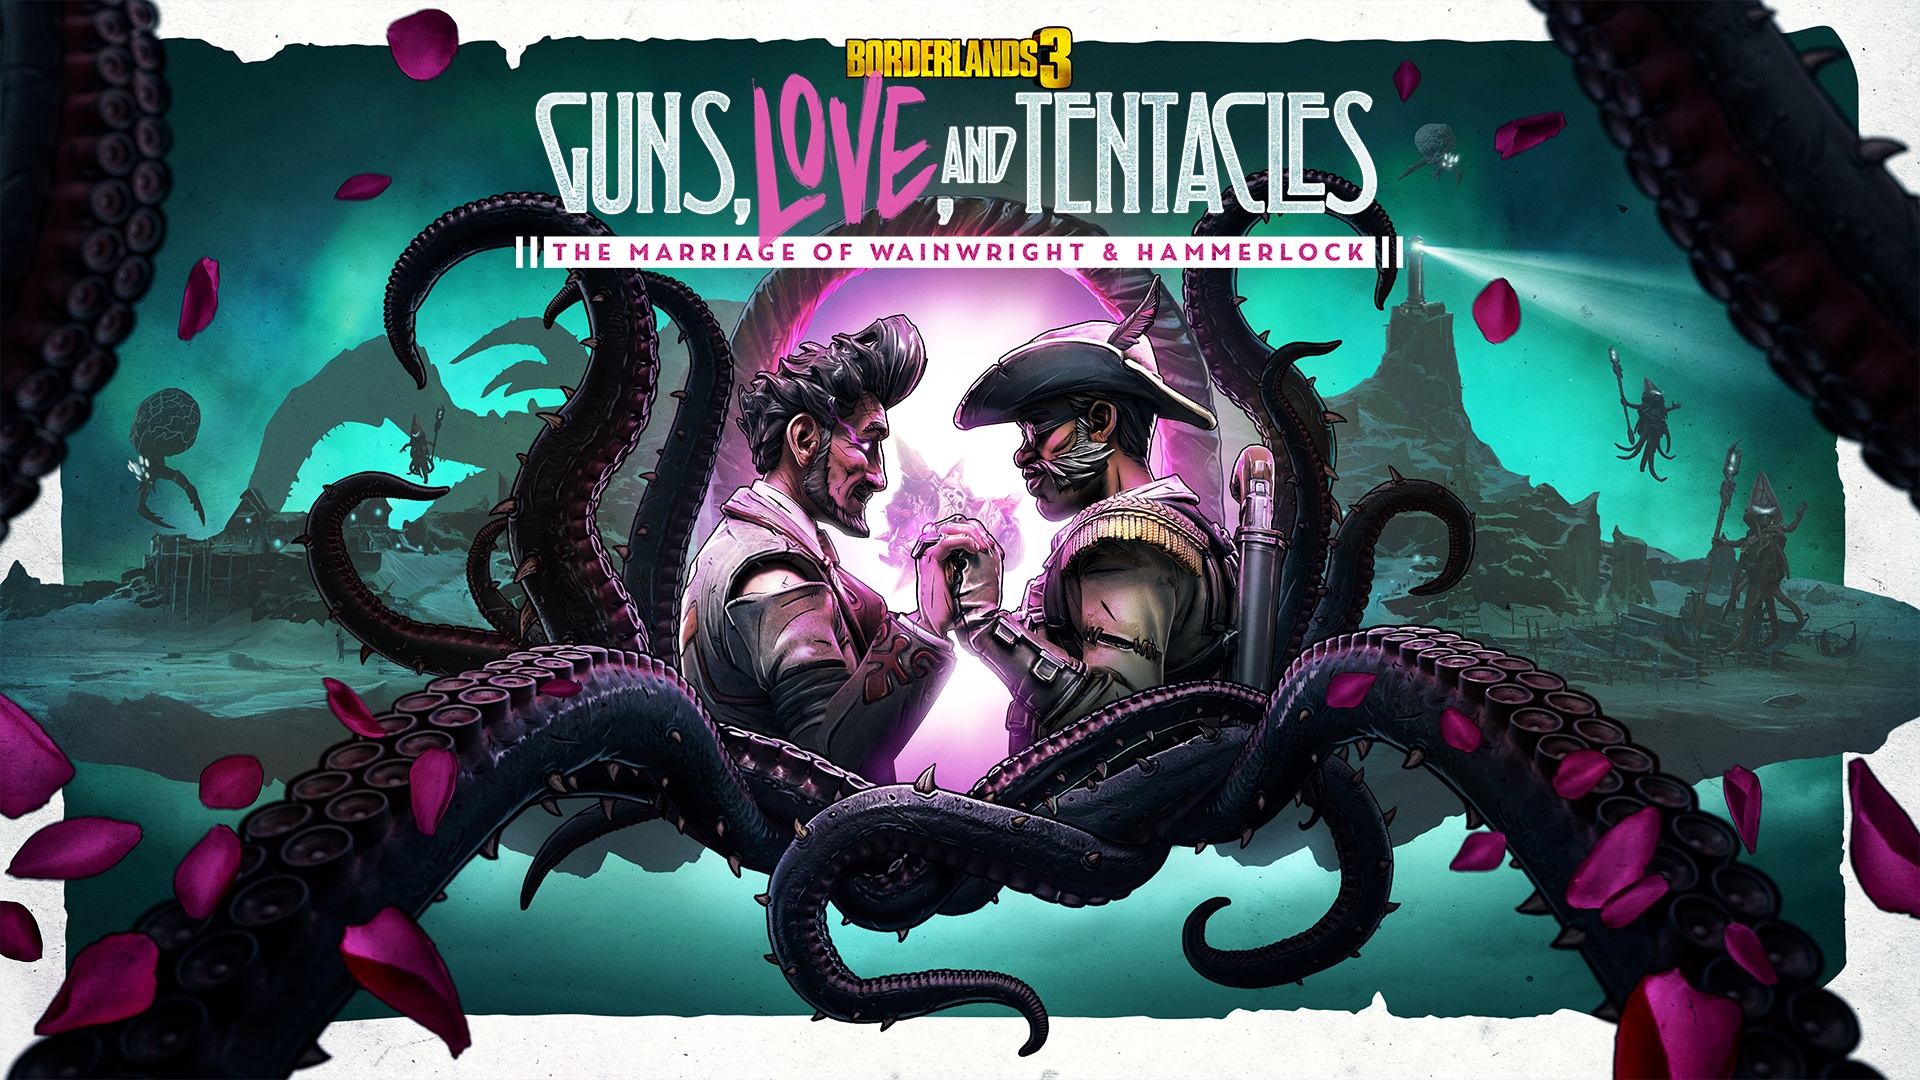 Next Week on Xbox: Neue Spiele vom 23. bis 27. März: Borderlands 3: Guns, Love and Tentacles